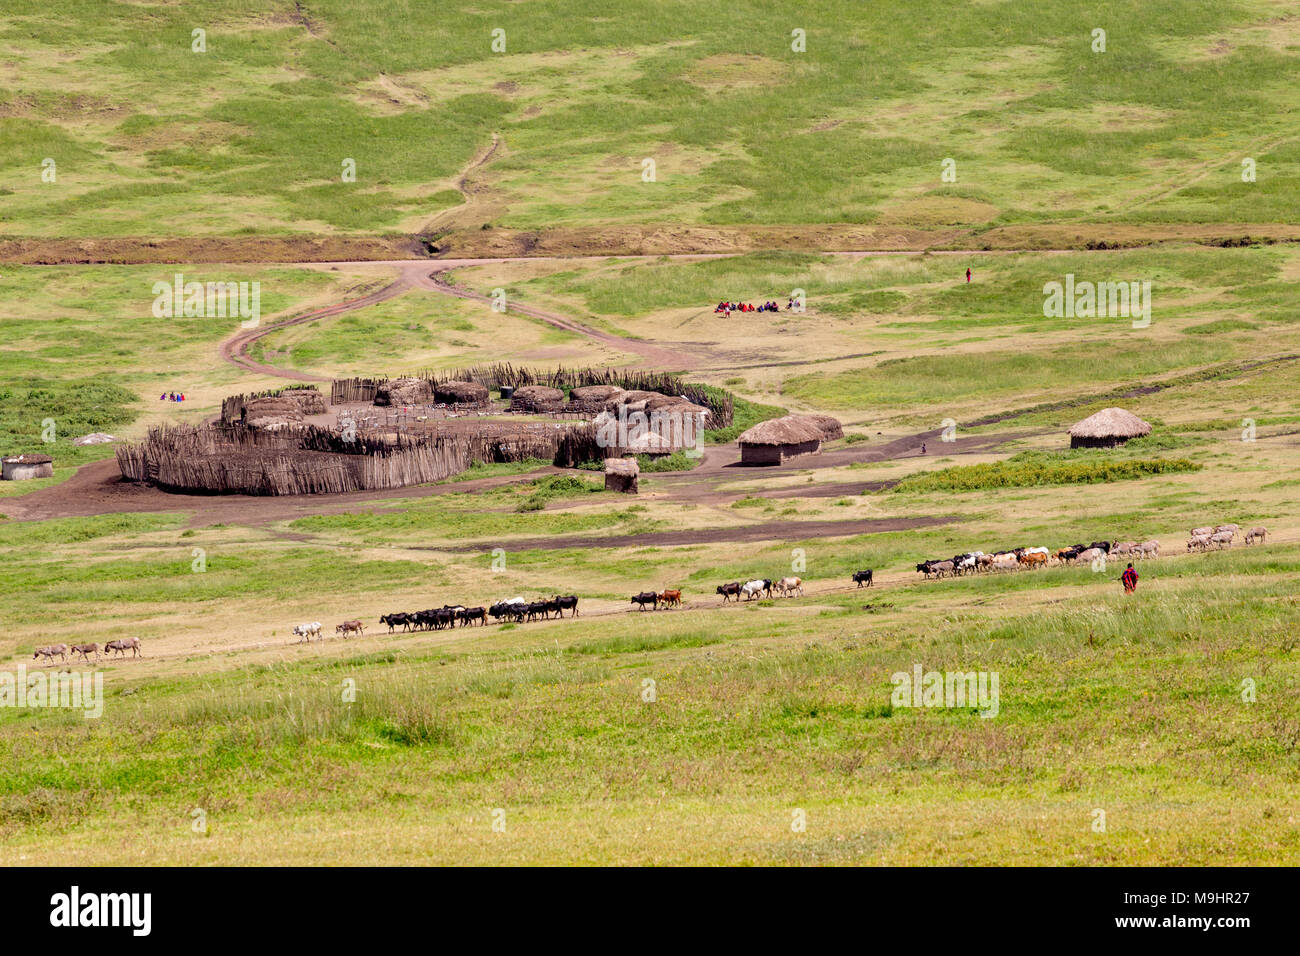 Piccolo centro rurale villaggio africano con tradizionale Manyattas (capanne) e allevamento di animali Foto Stock